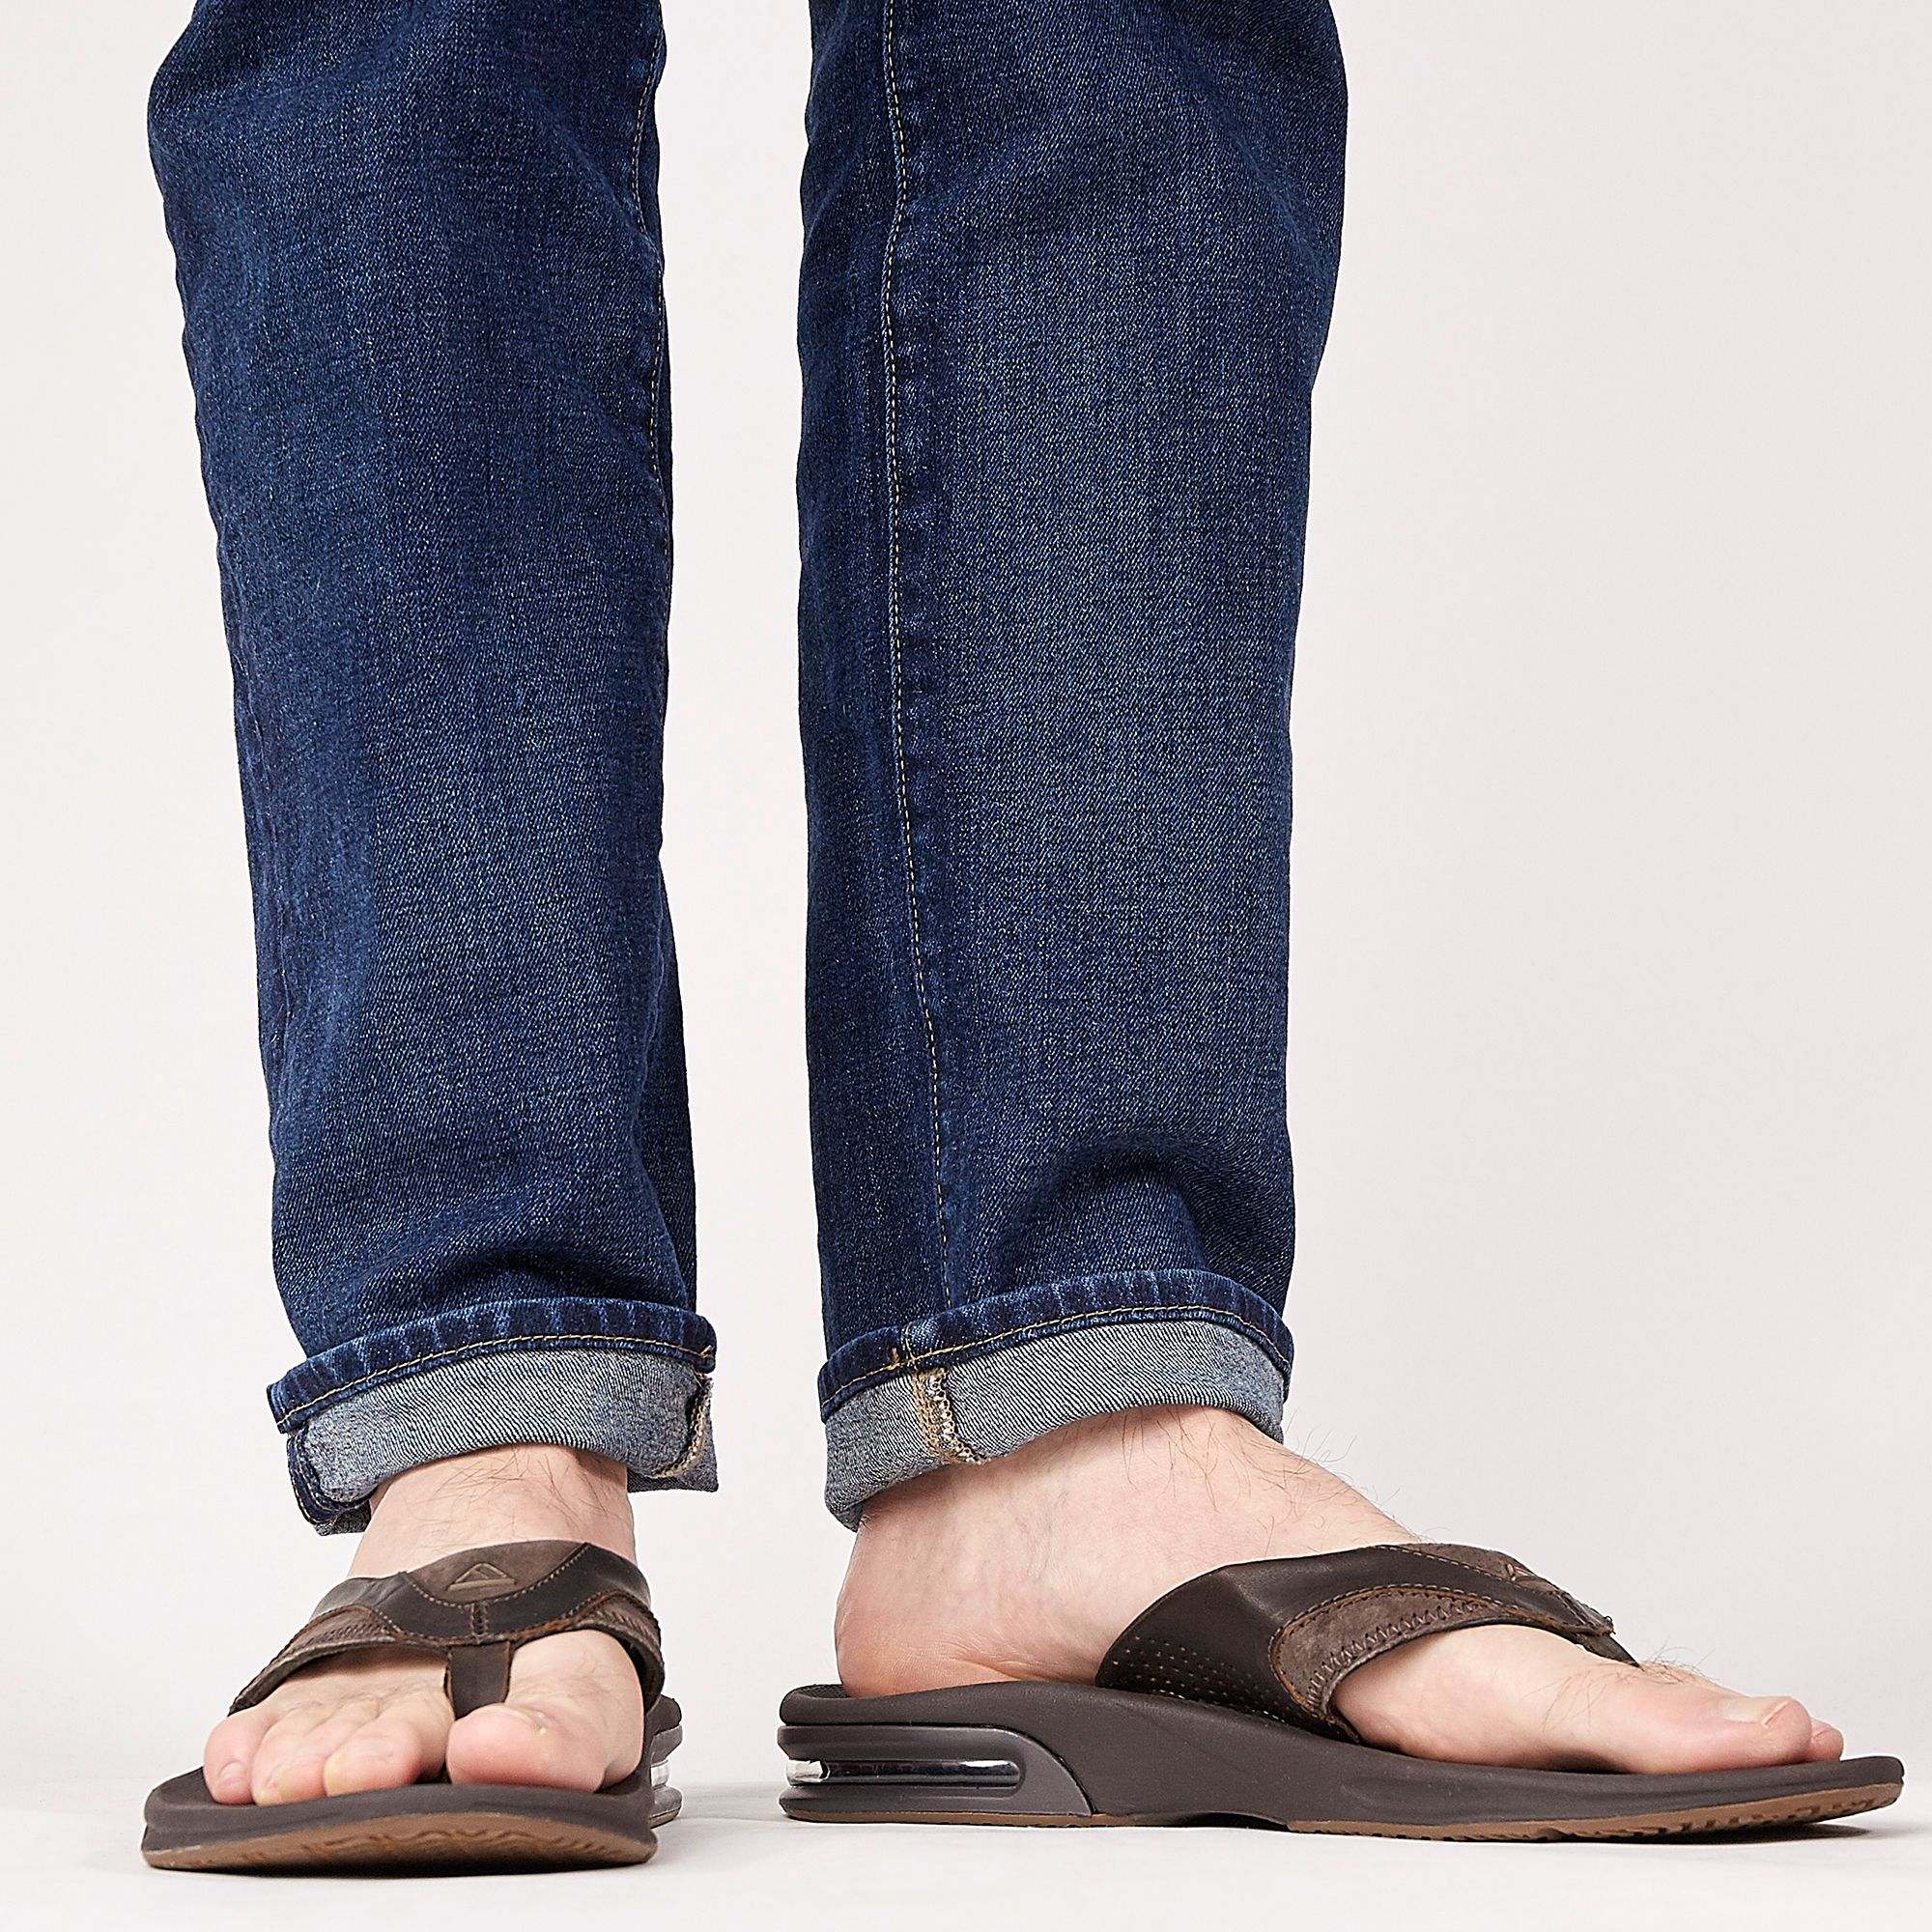 yao birkenstock sandals